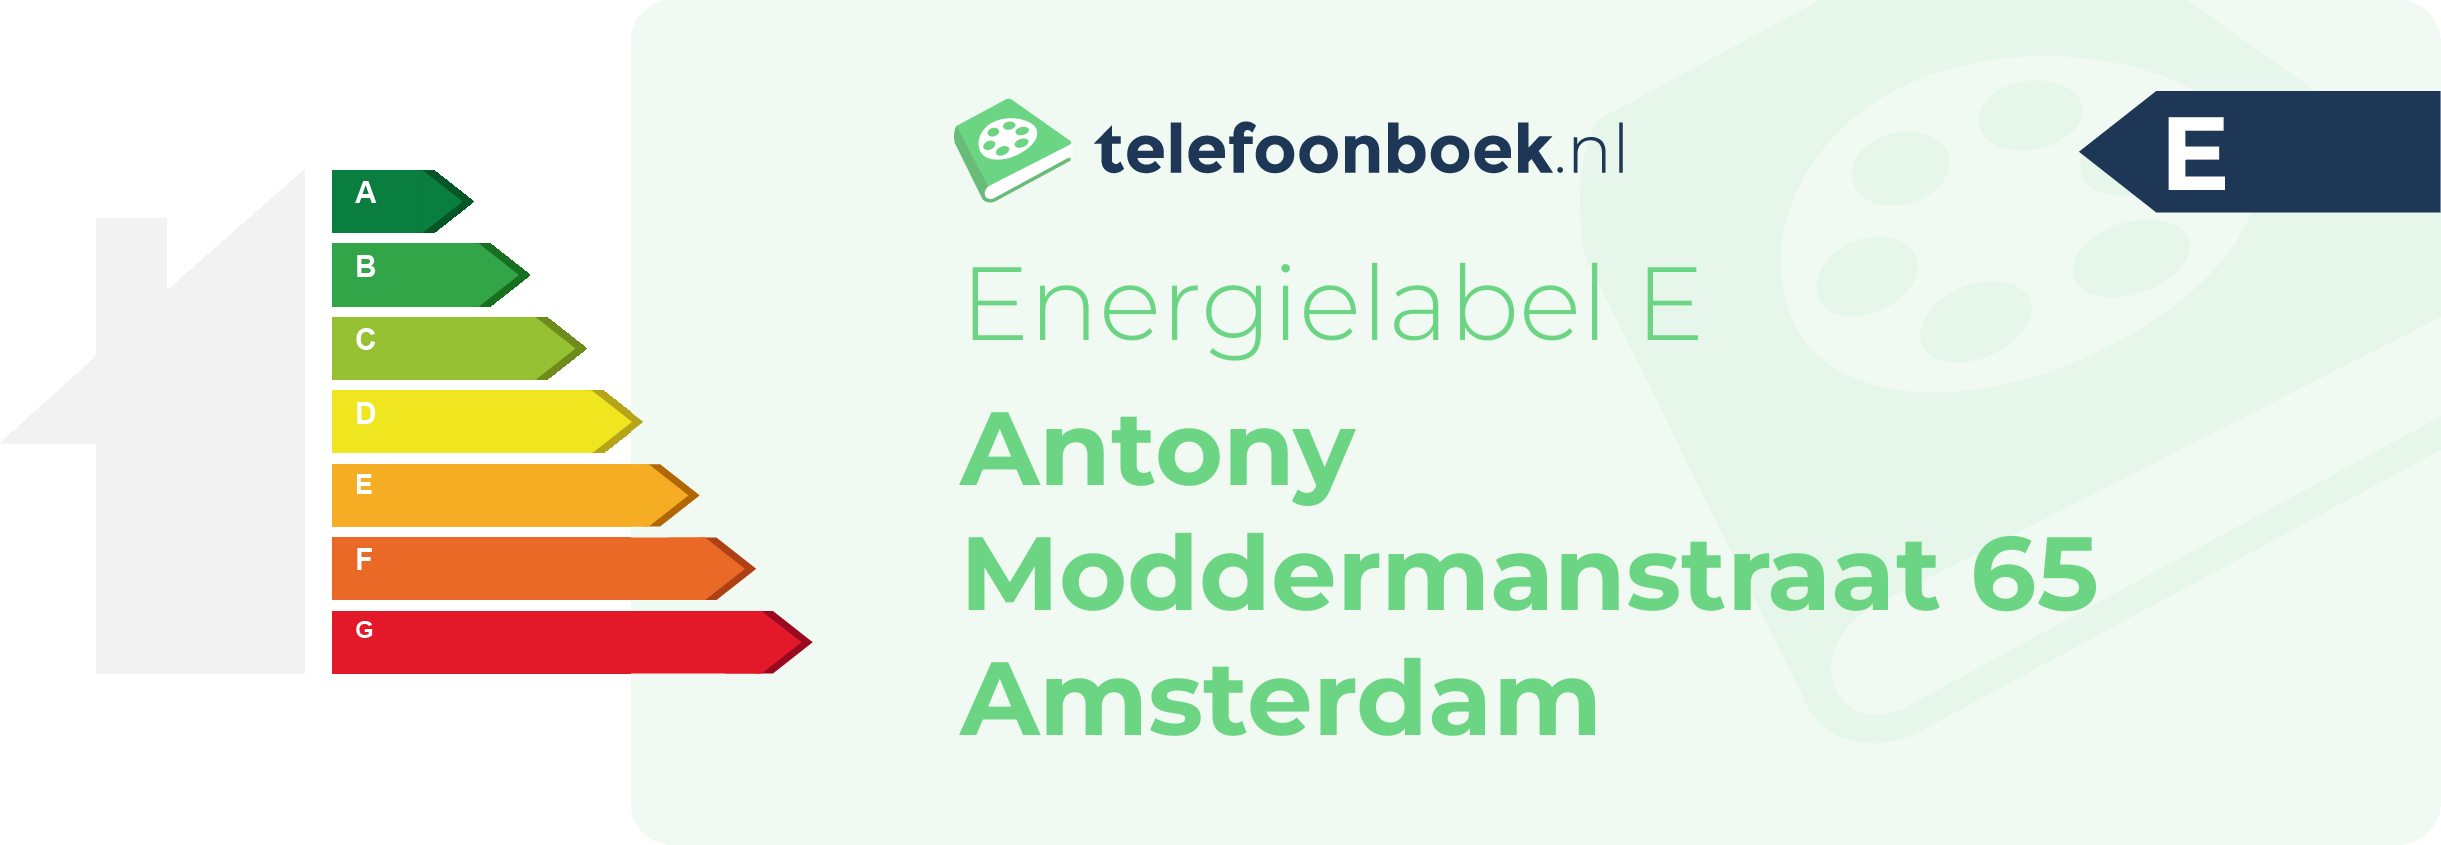 Energielabel Antony Moddermanstraat 65 Amsterdam